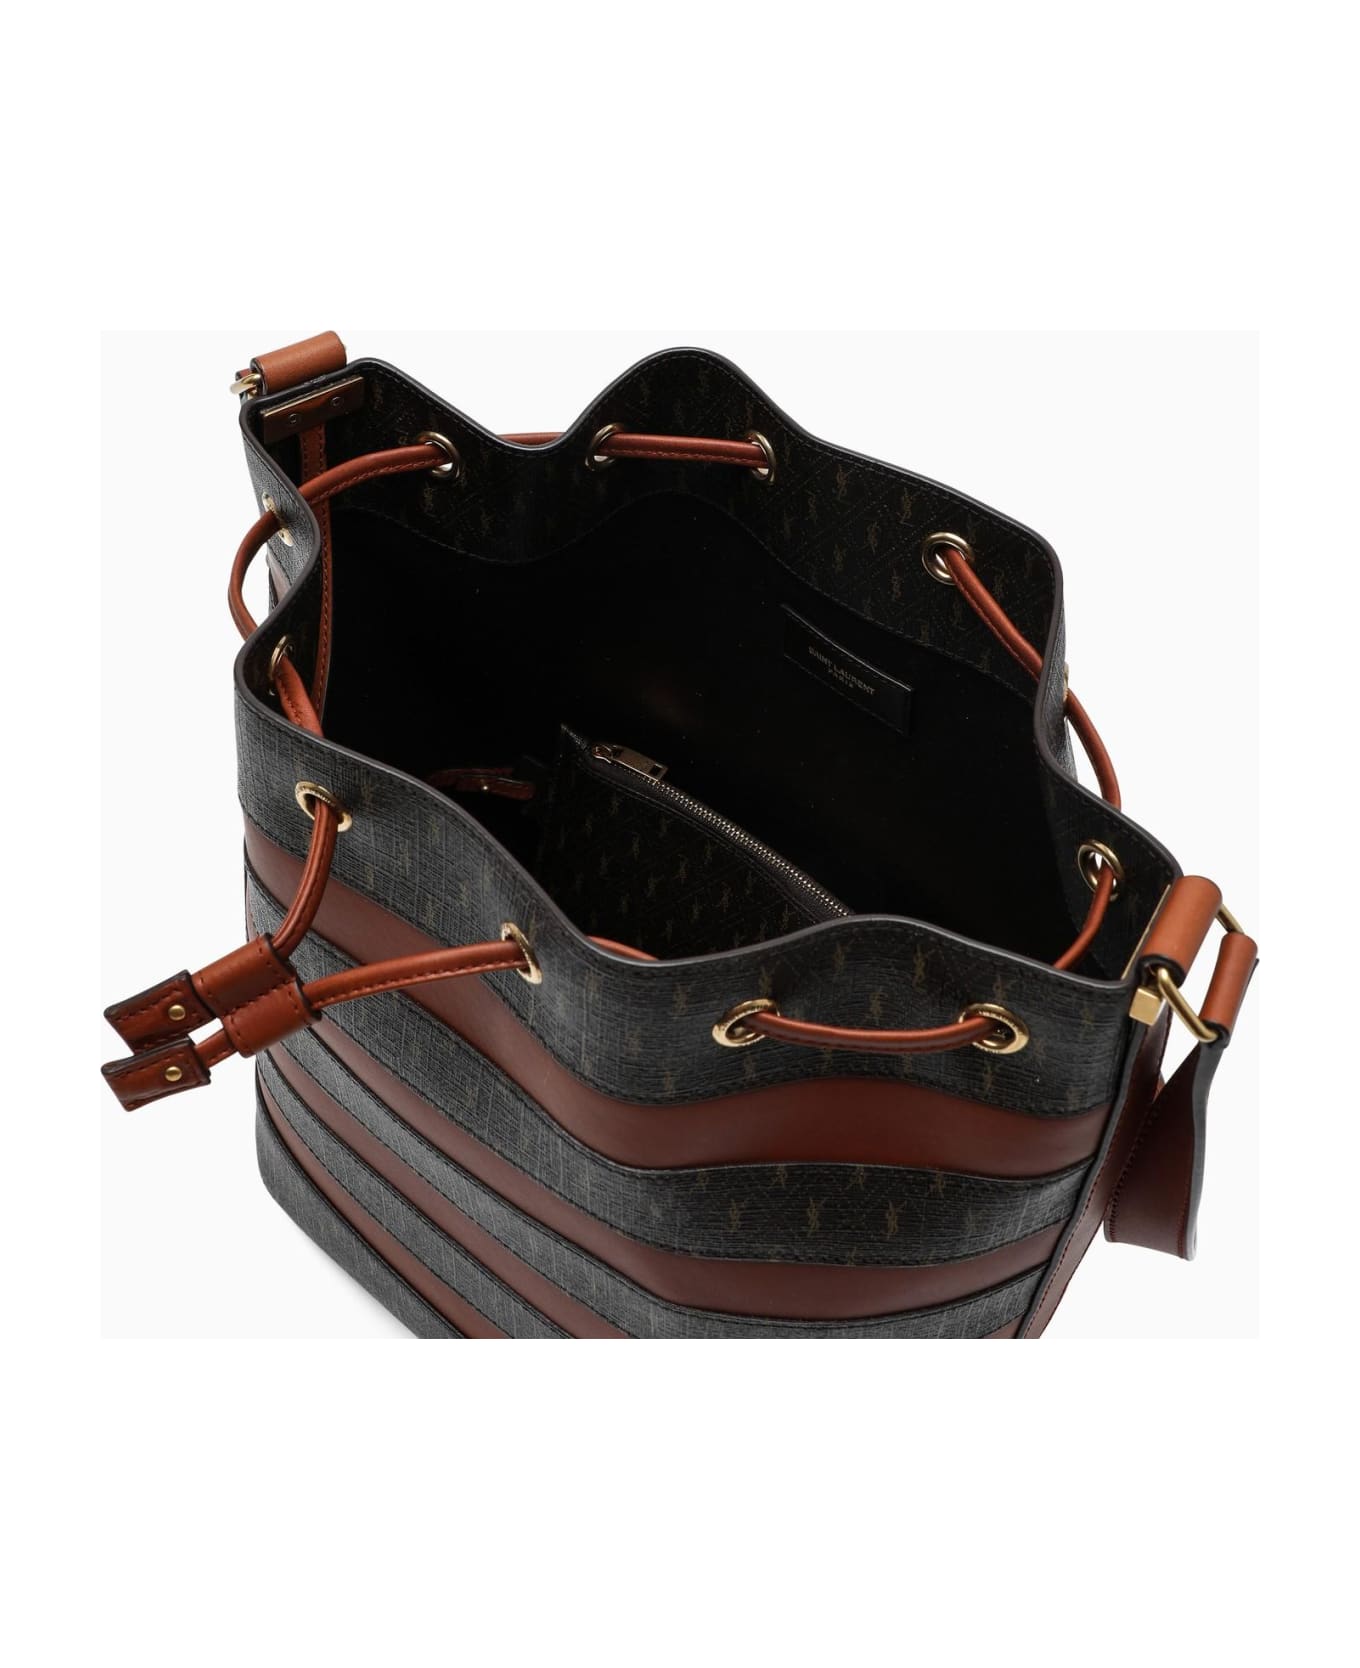 Saint Laurent Jacquard Leather Seau Medium Bucket Bag - BROWN